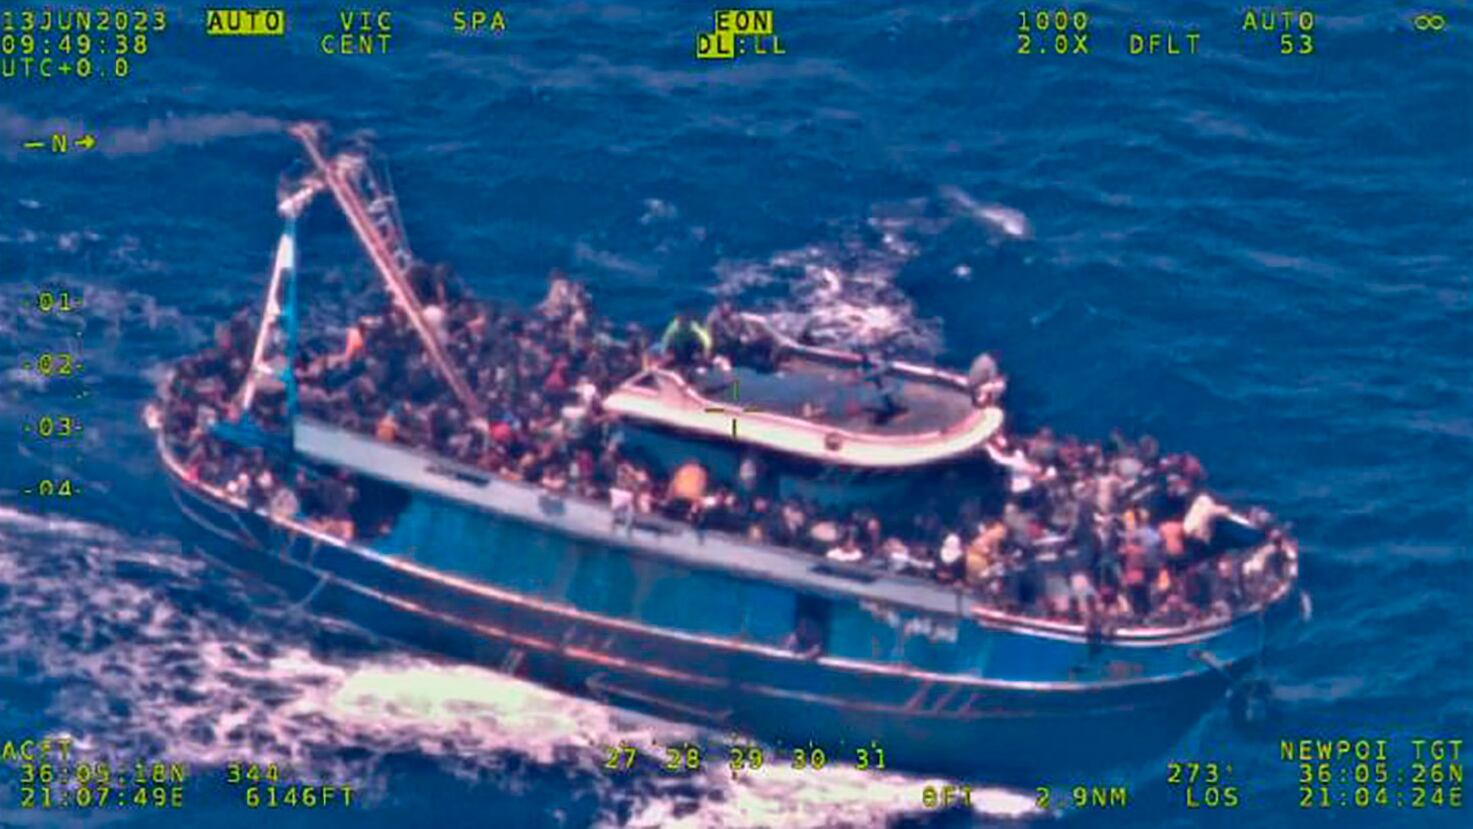 Imagen aérea del pesquero 'Adriana' tomada por el avión de Frontex Eagle 1 el pasado 13 de junio en zona SAR griega. 